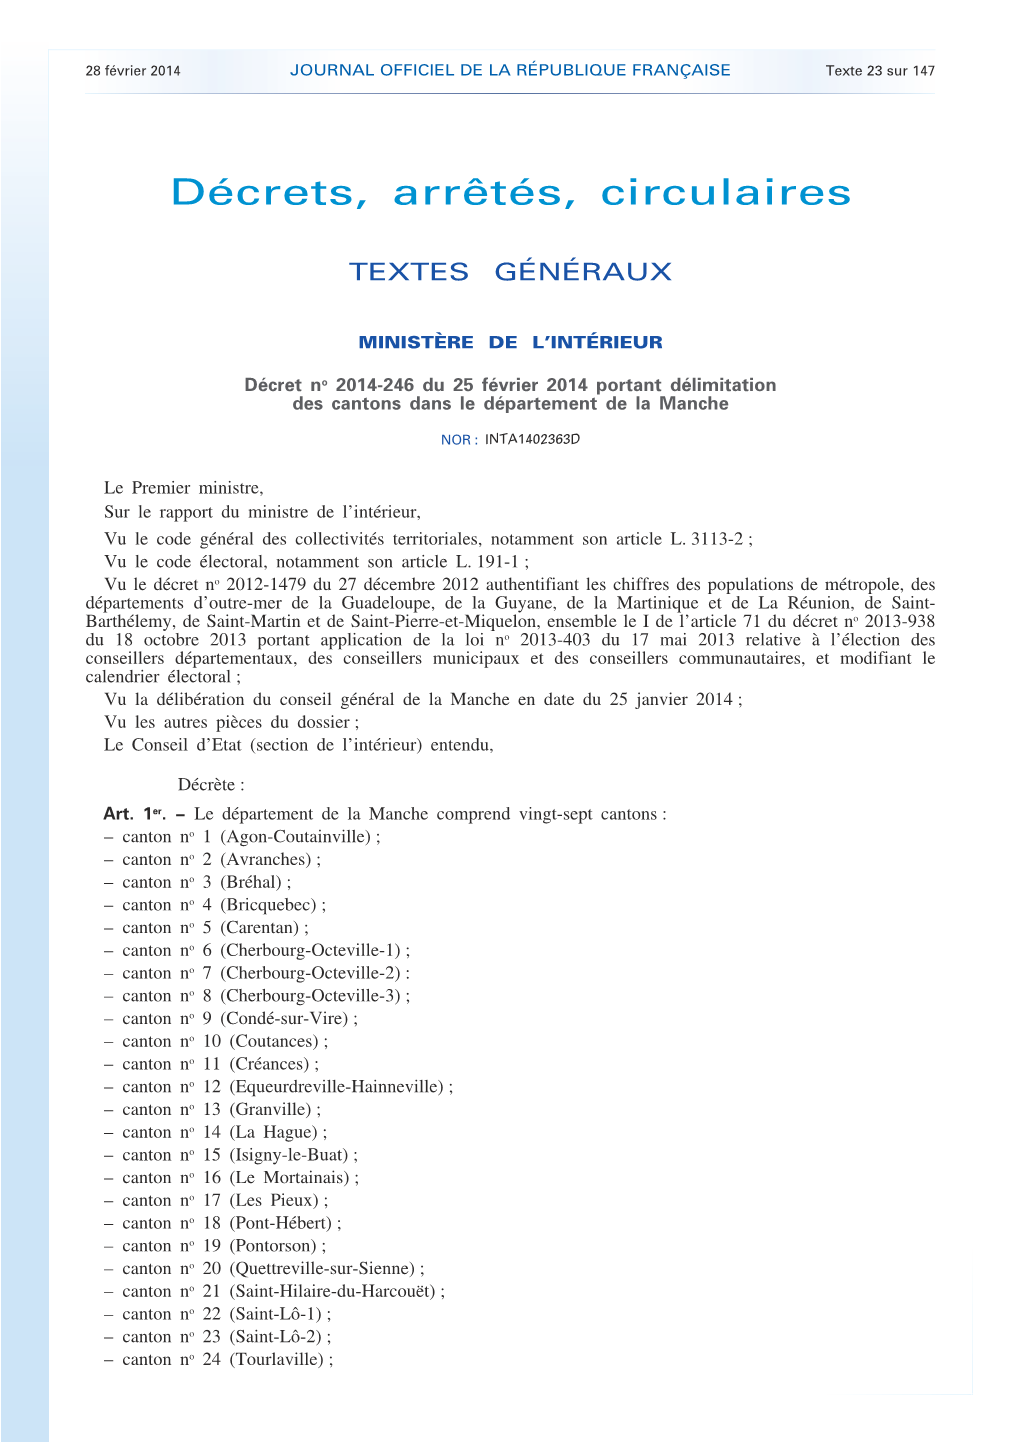 JOURNAL OFFICIEL DE LA RÉPUBLIQUE FRANÇAISE Texte 23 Sur 147